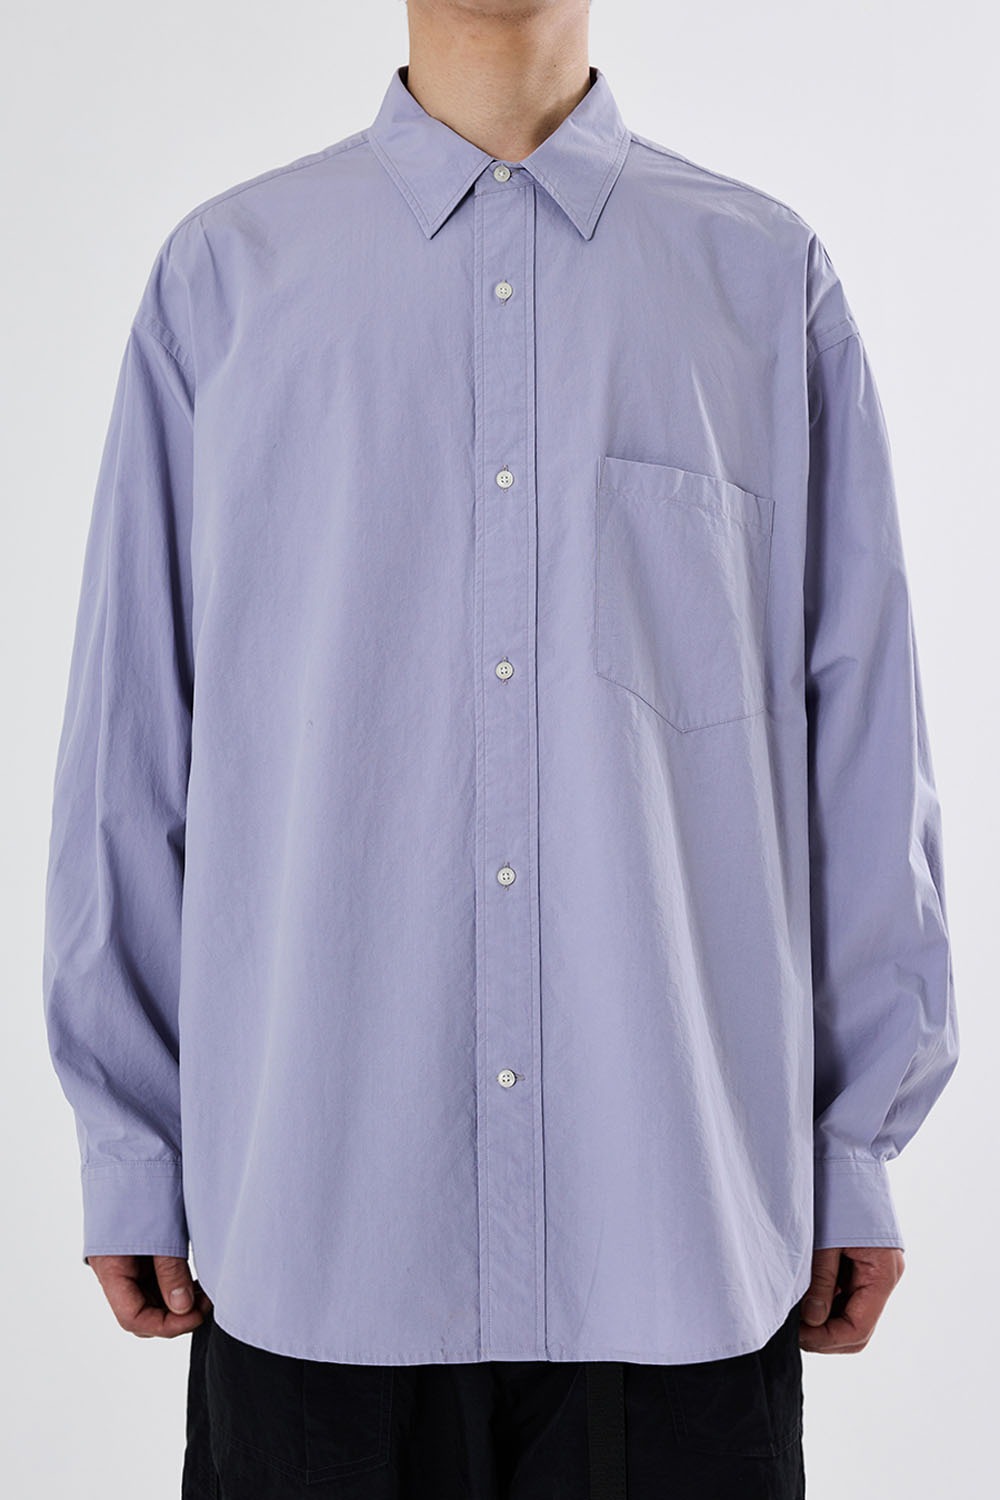 Uniform Shirt-Lavender